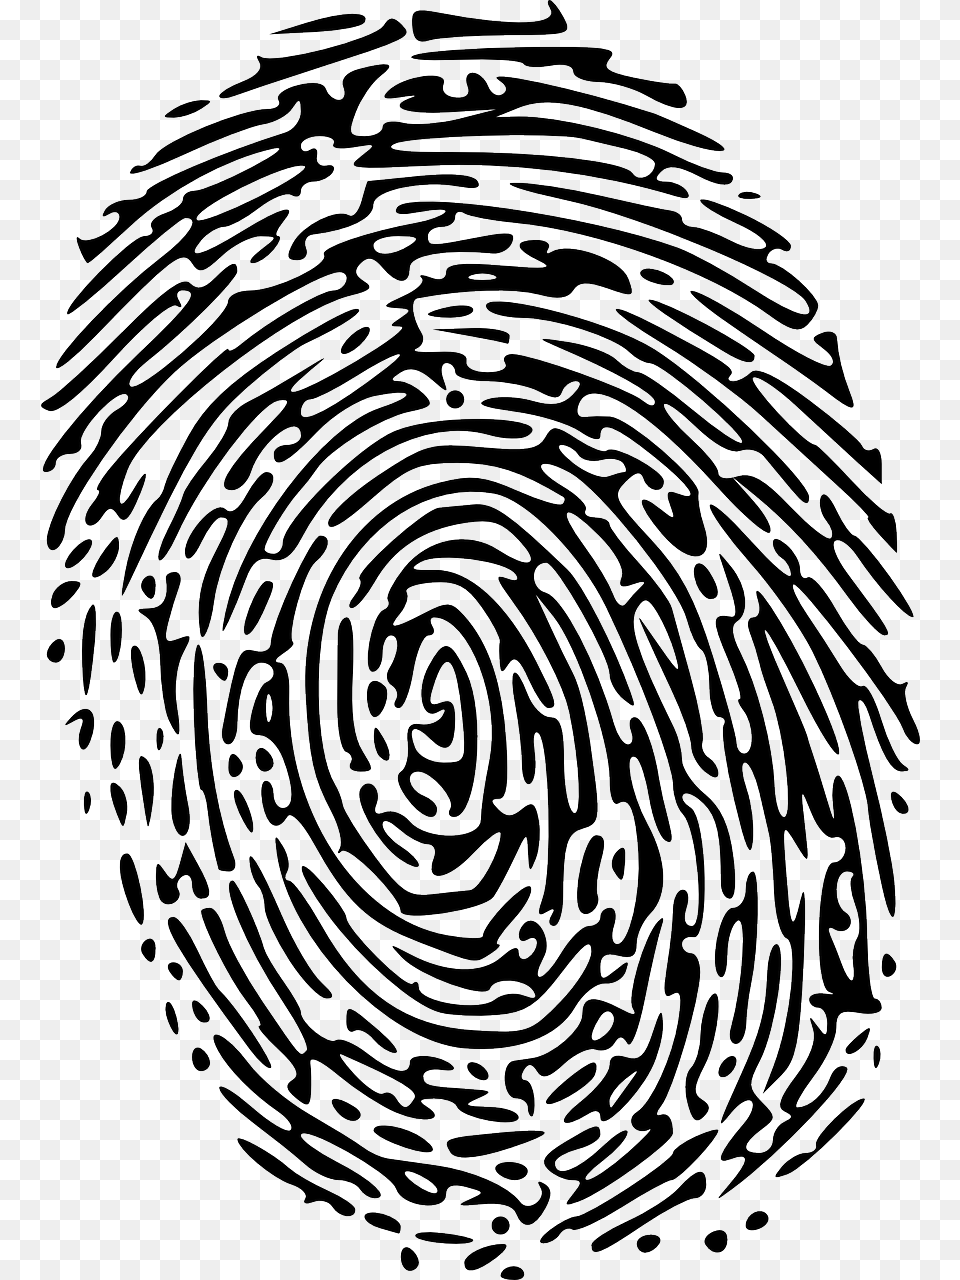 Sherlock Holmes Observation Skills Fingerprint Transparent, Nature, Outdoors, Spiral, Ripple Free Png Download